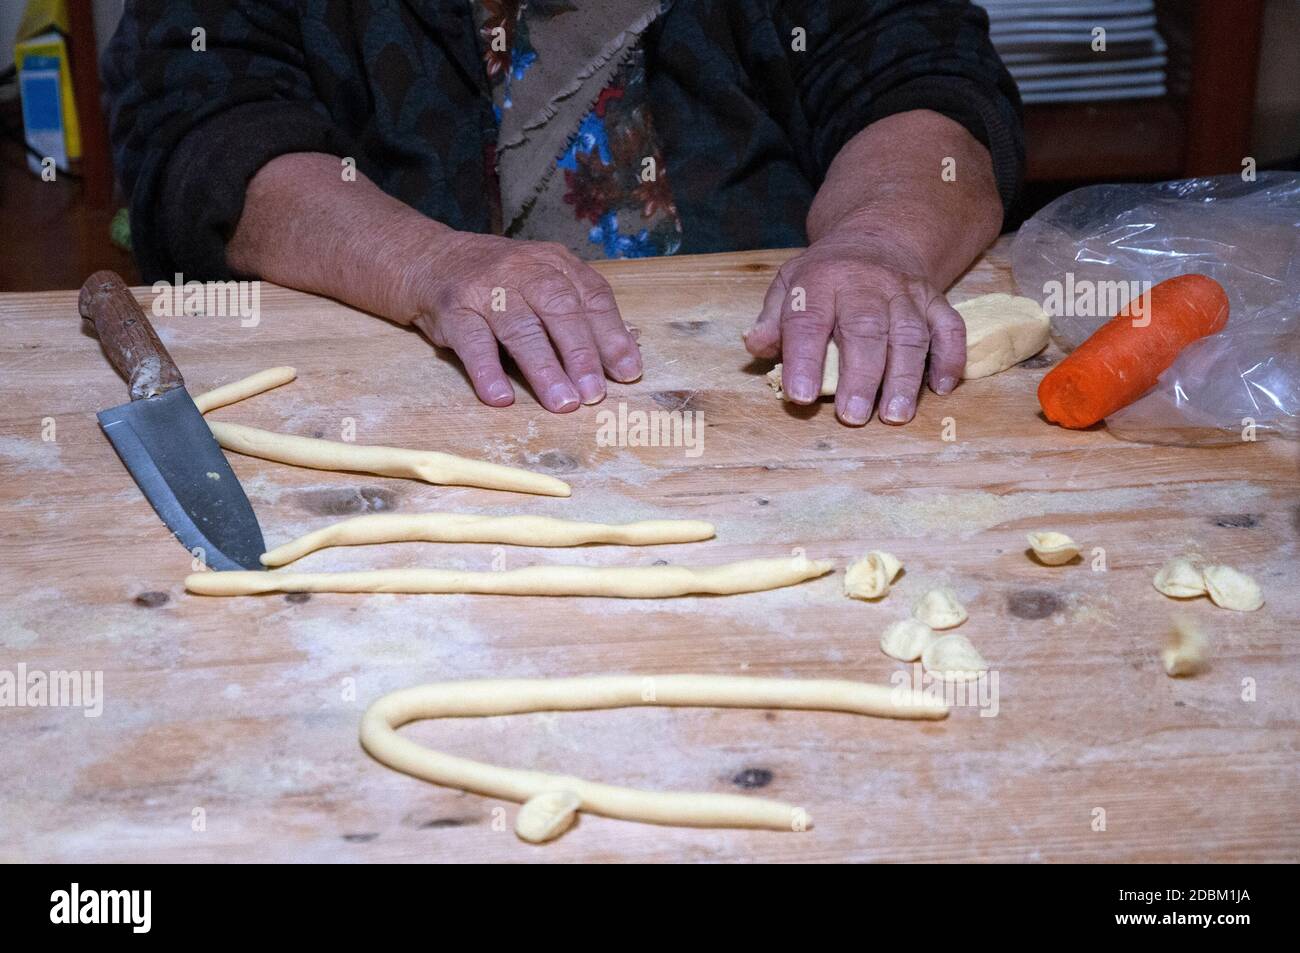 Bari vecchia - un momento della lavorazione delle Orecchiette - italienische Pasta handgefertigt Stockfoto